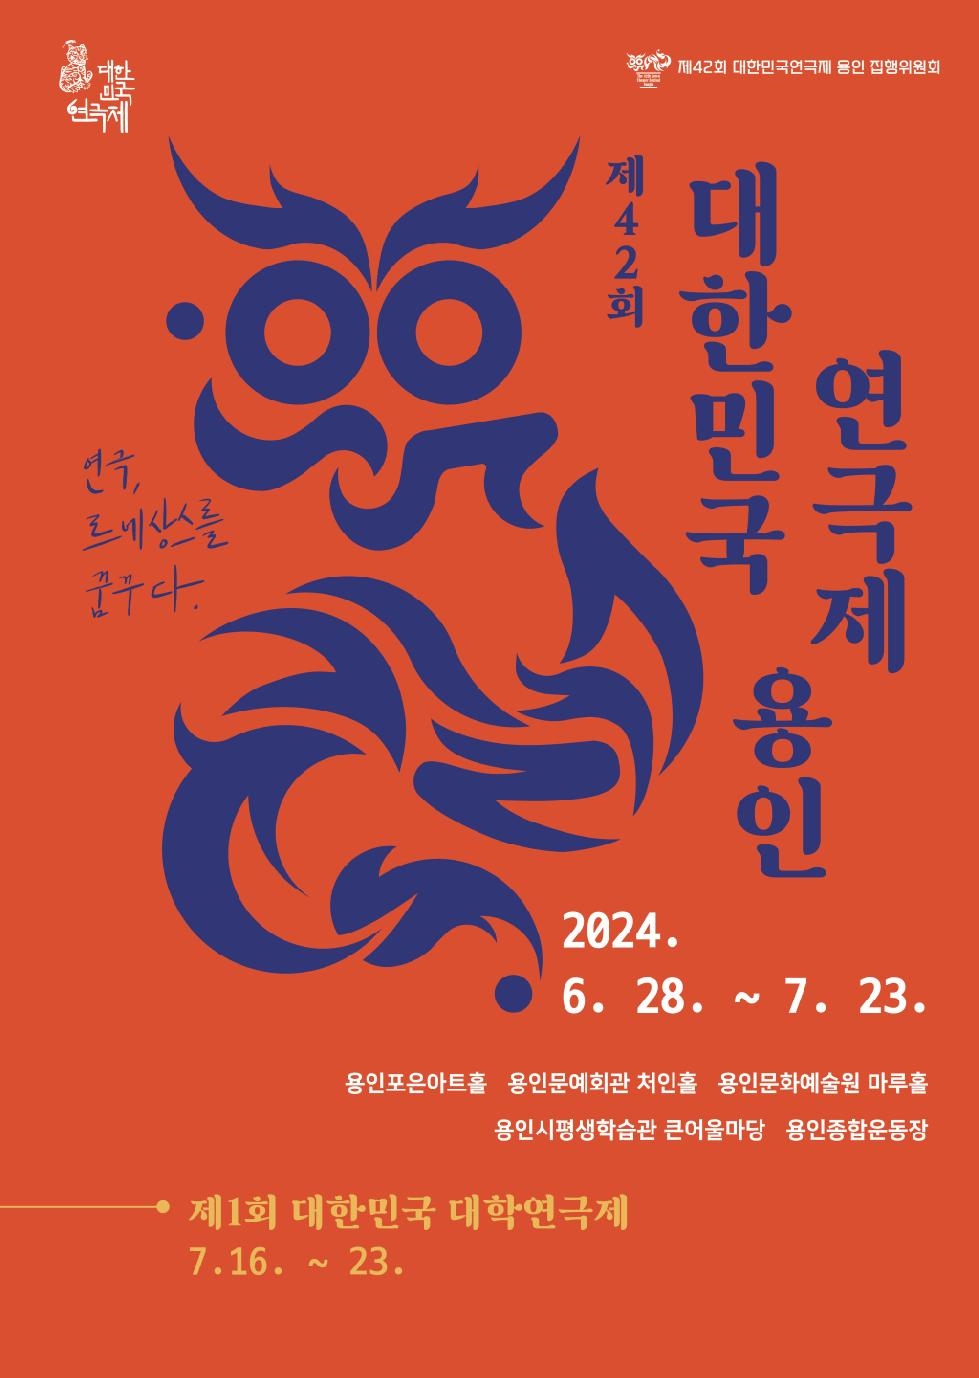 용인시, “제42회 대한민국연극제 용인 개최로 ‘문화 르네상스’ 열겠다”